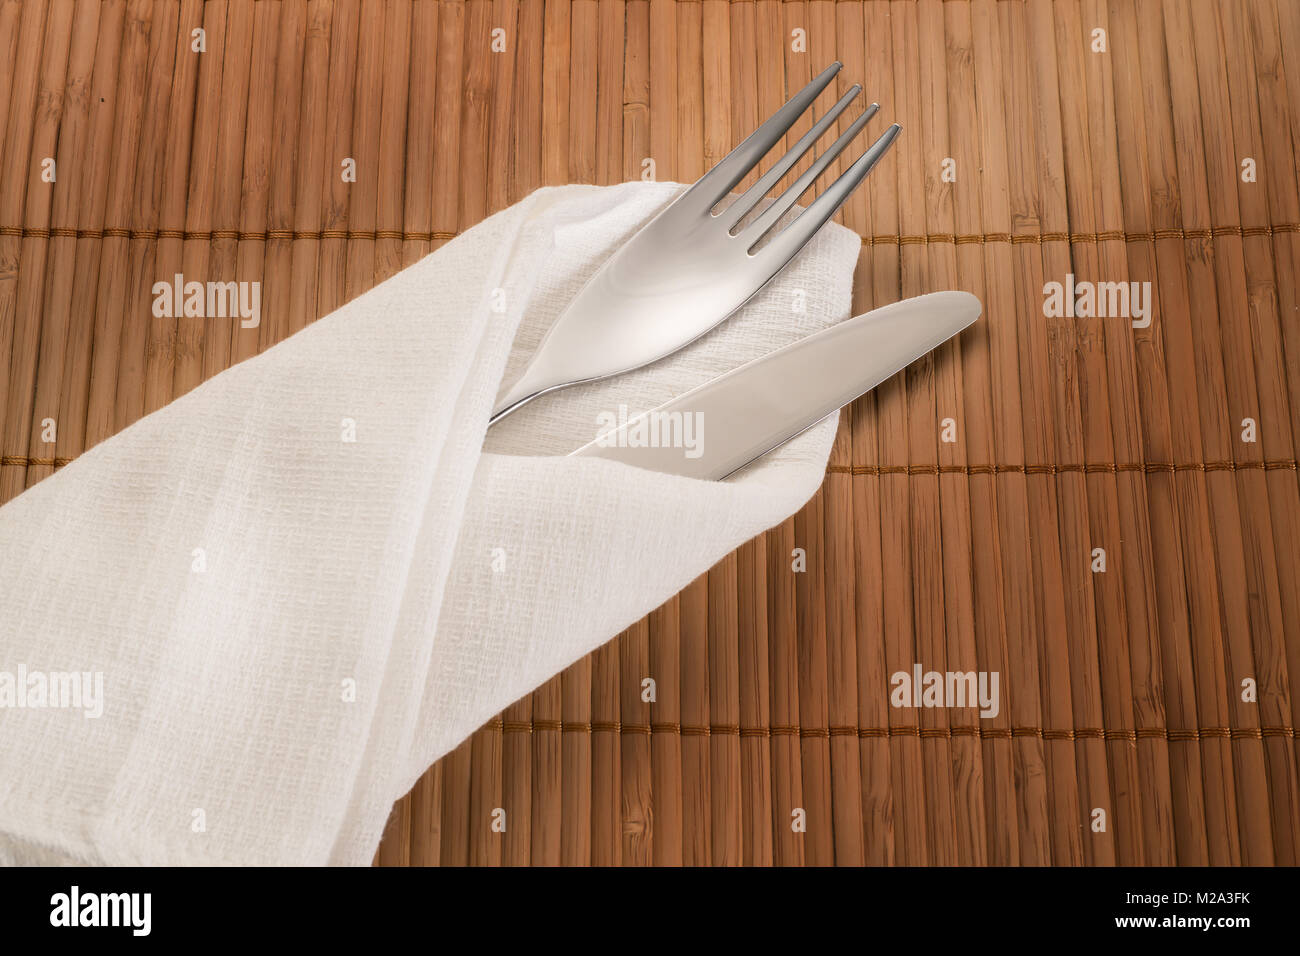 Einstellung statt. Messer und Gabel in Weiß textil Serviette auf beige Bambus Tisch Stockfoto